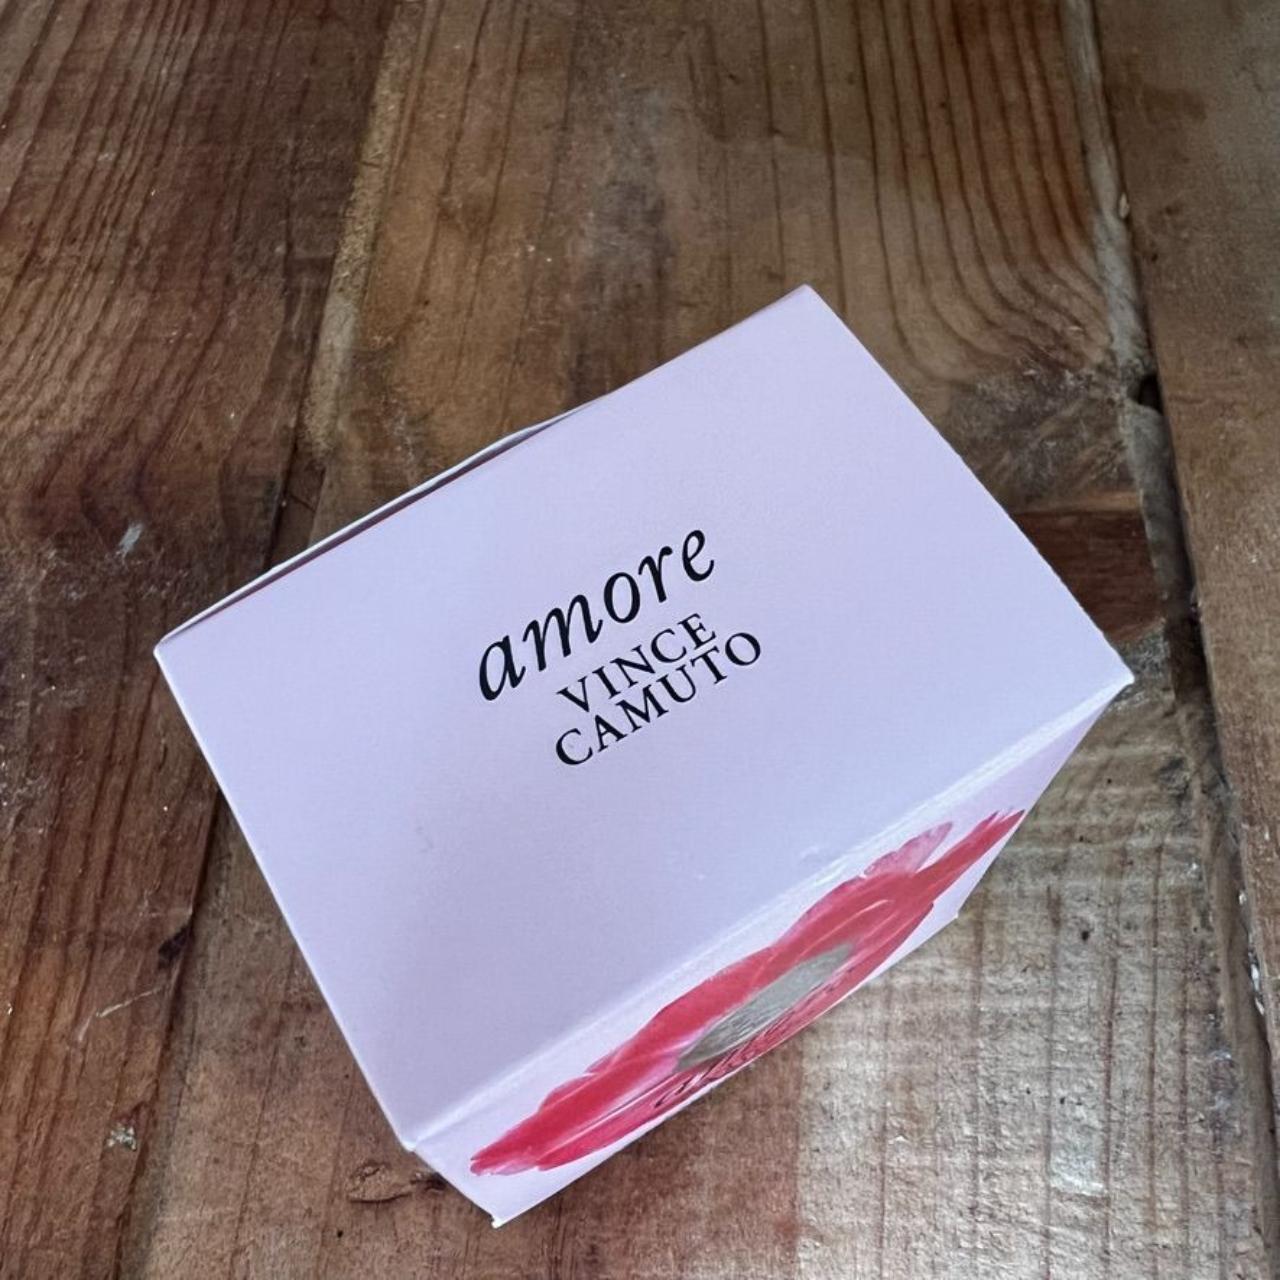 Vince Camuto Amore Eau de Parfum, 1.0 oz Brand new - Depop